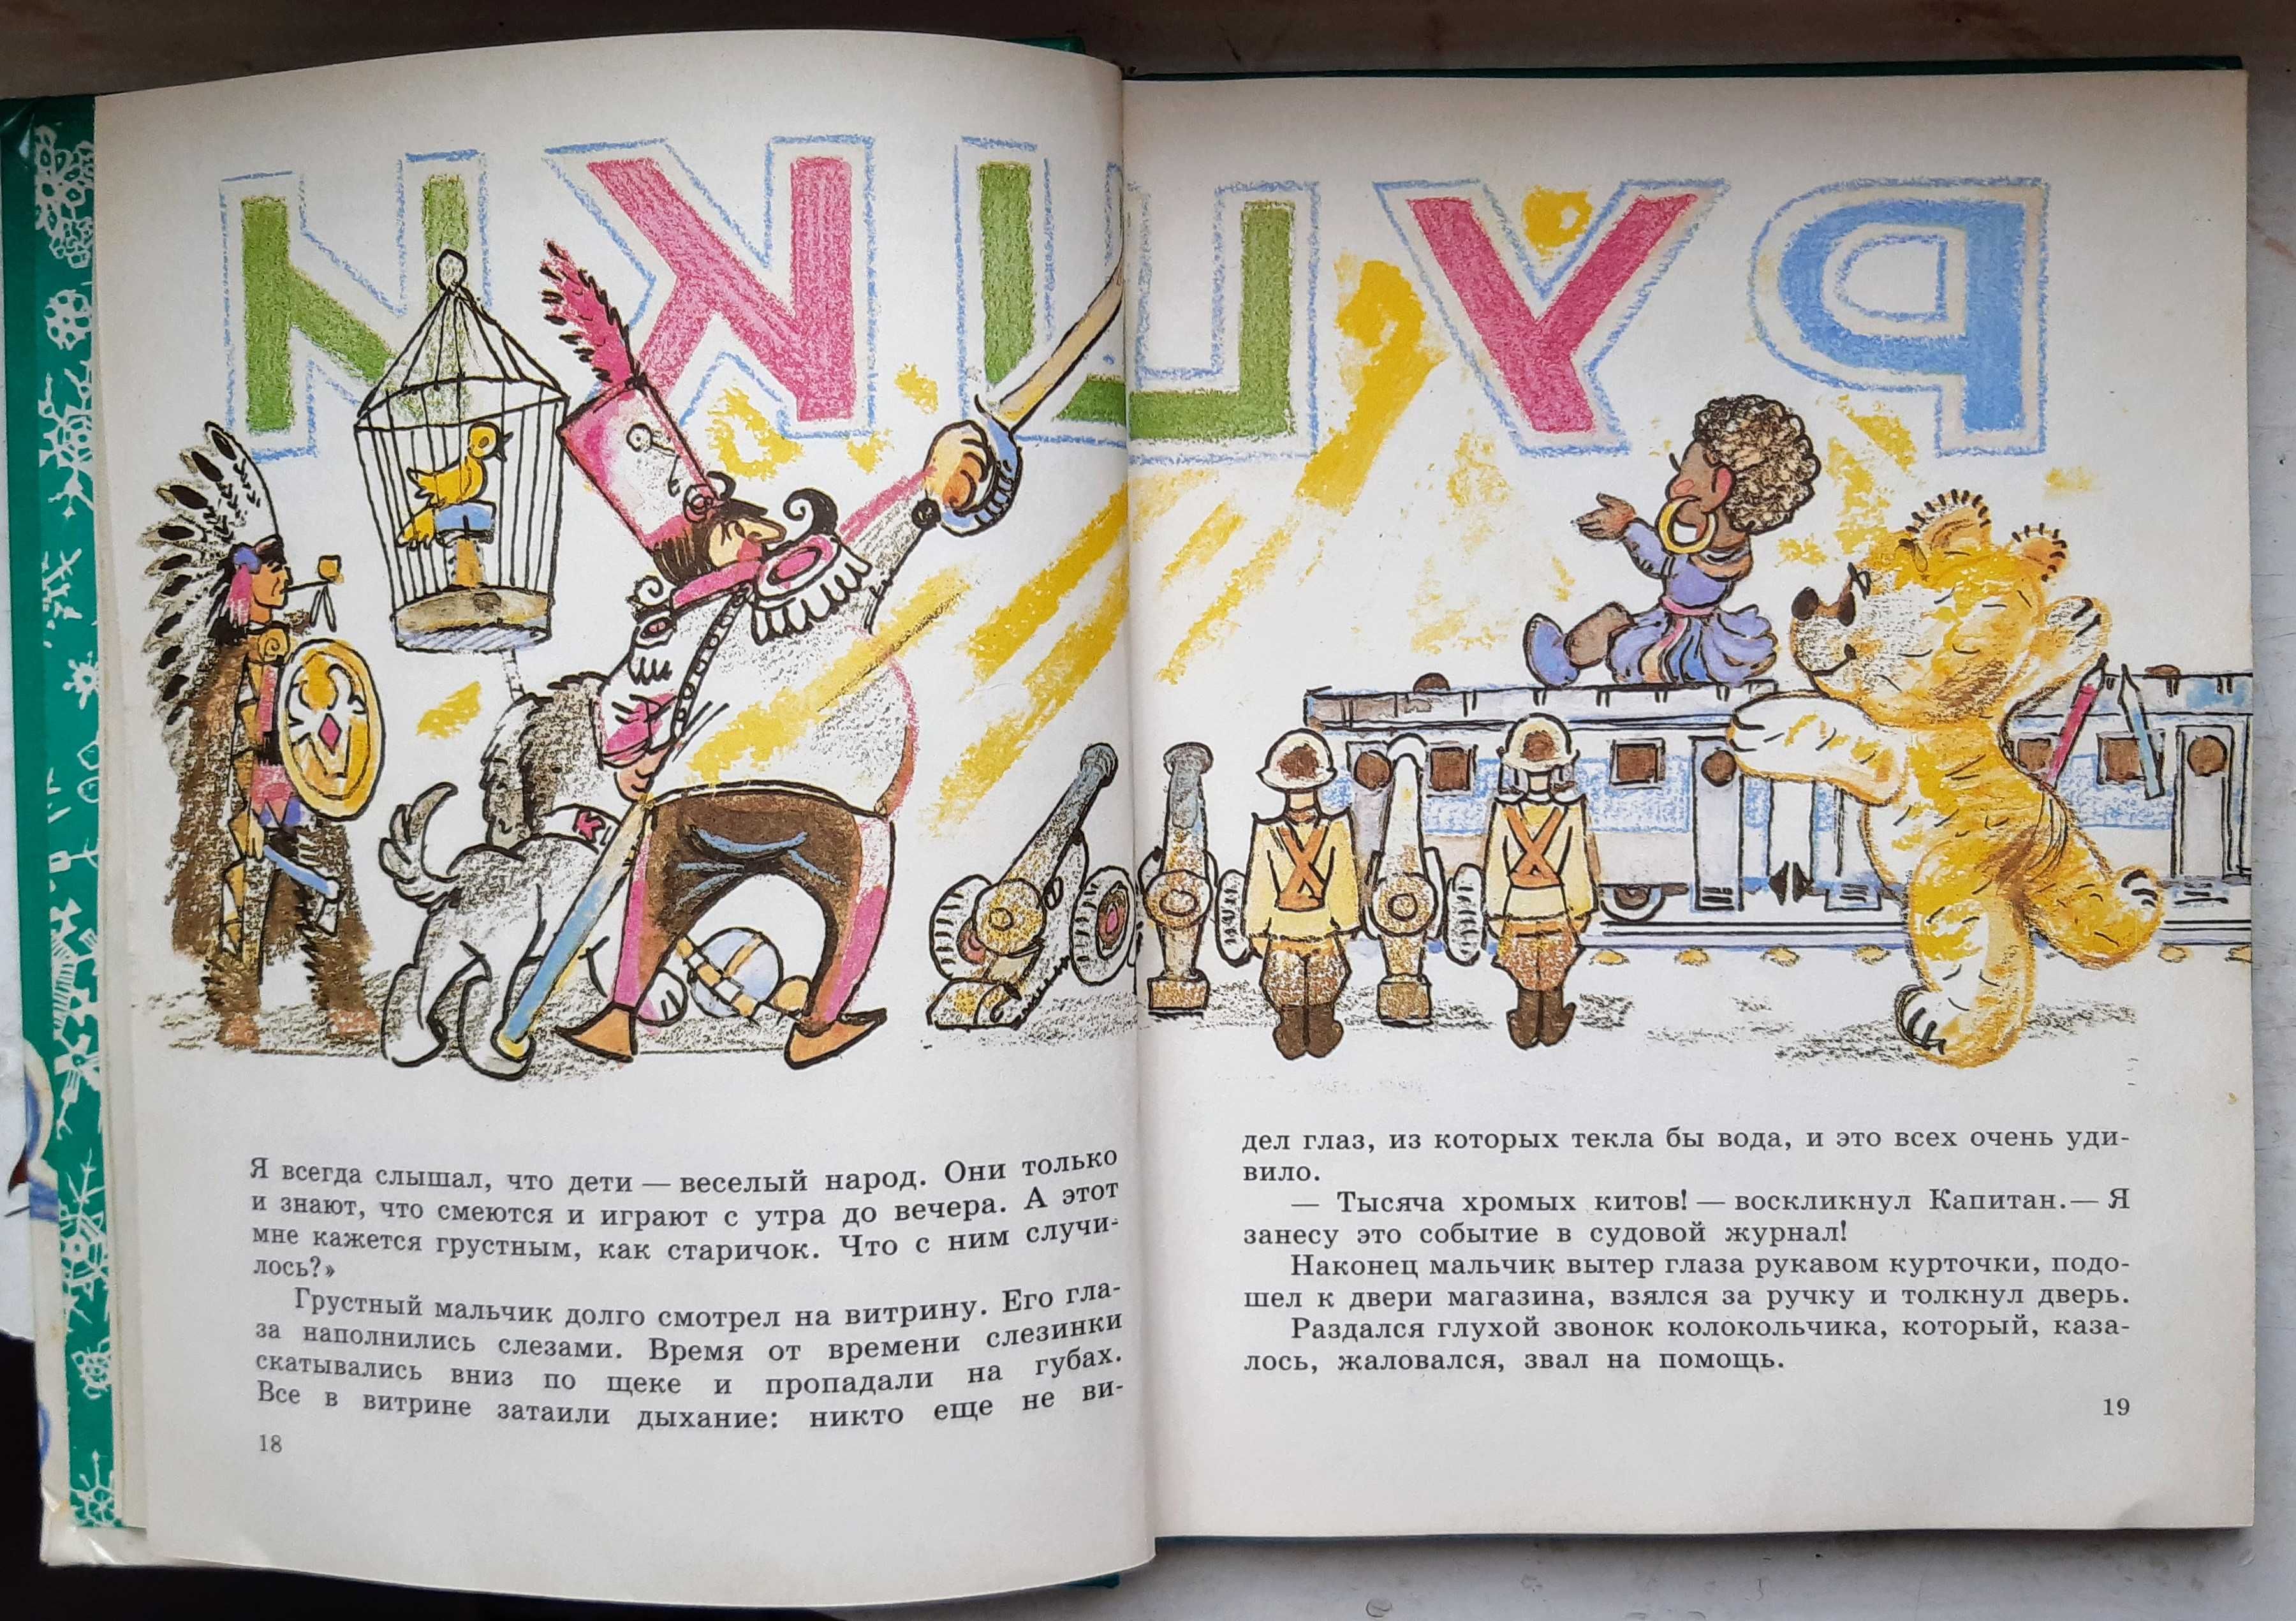 Путешествие голубой стрелы, Джанни Родари, 1992 г. детская литература